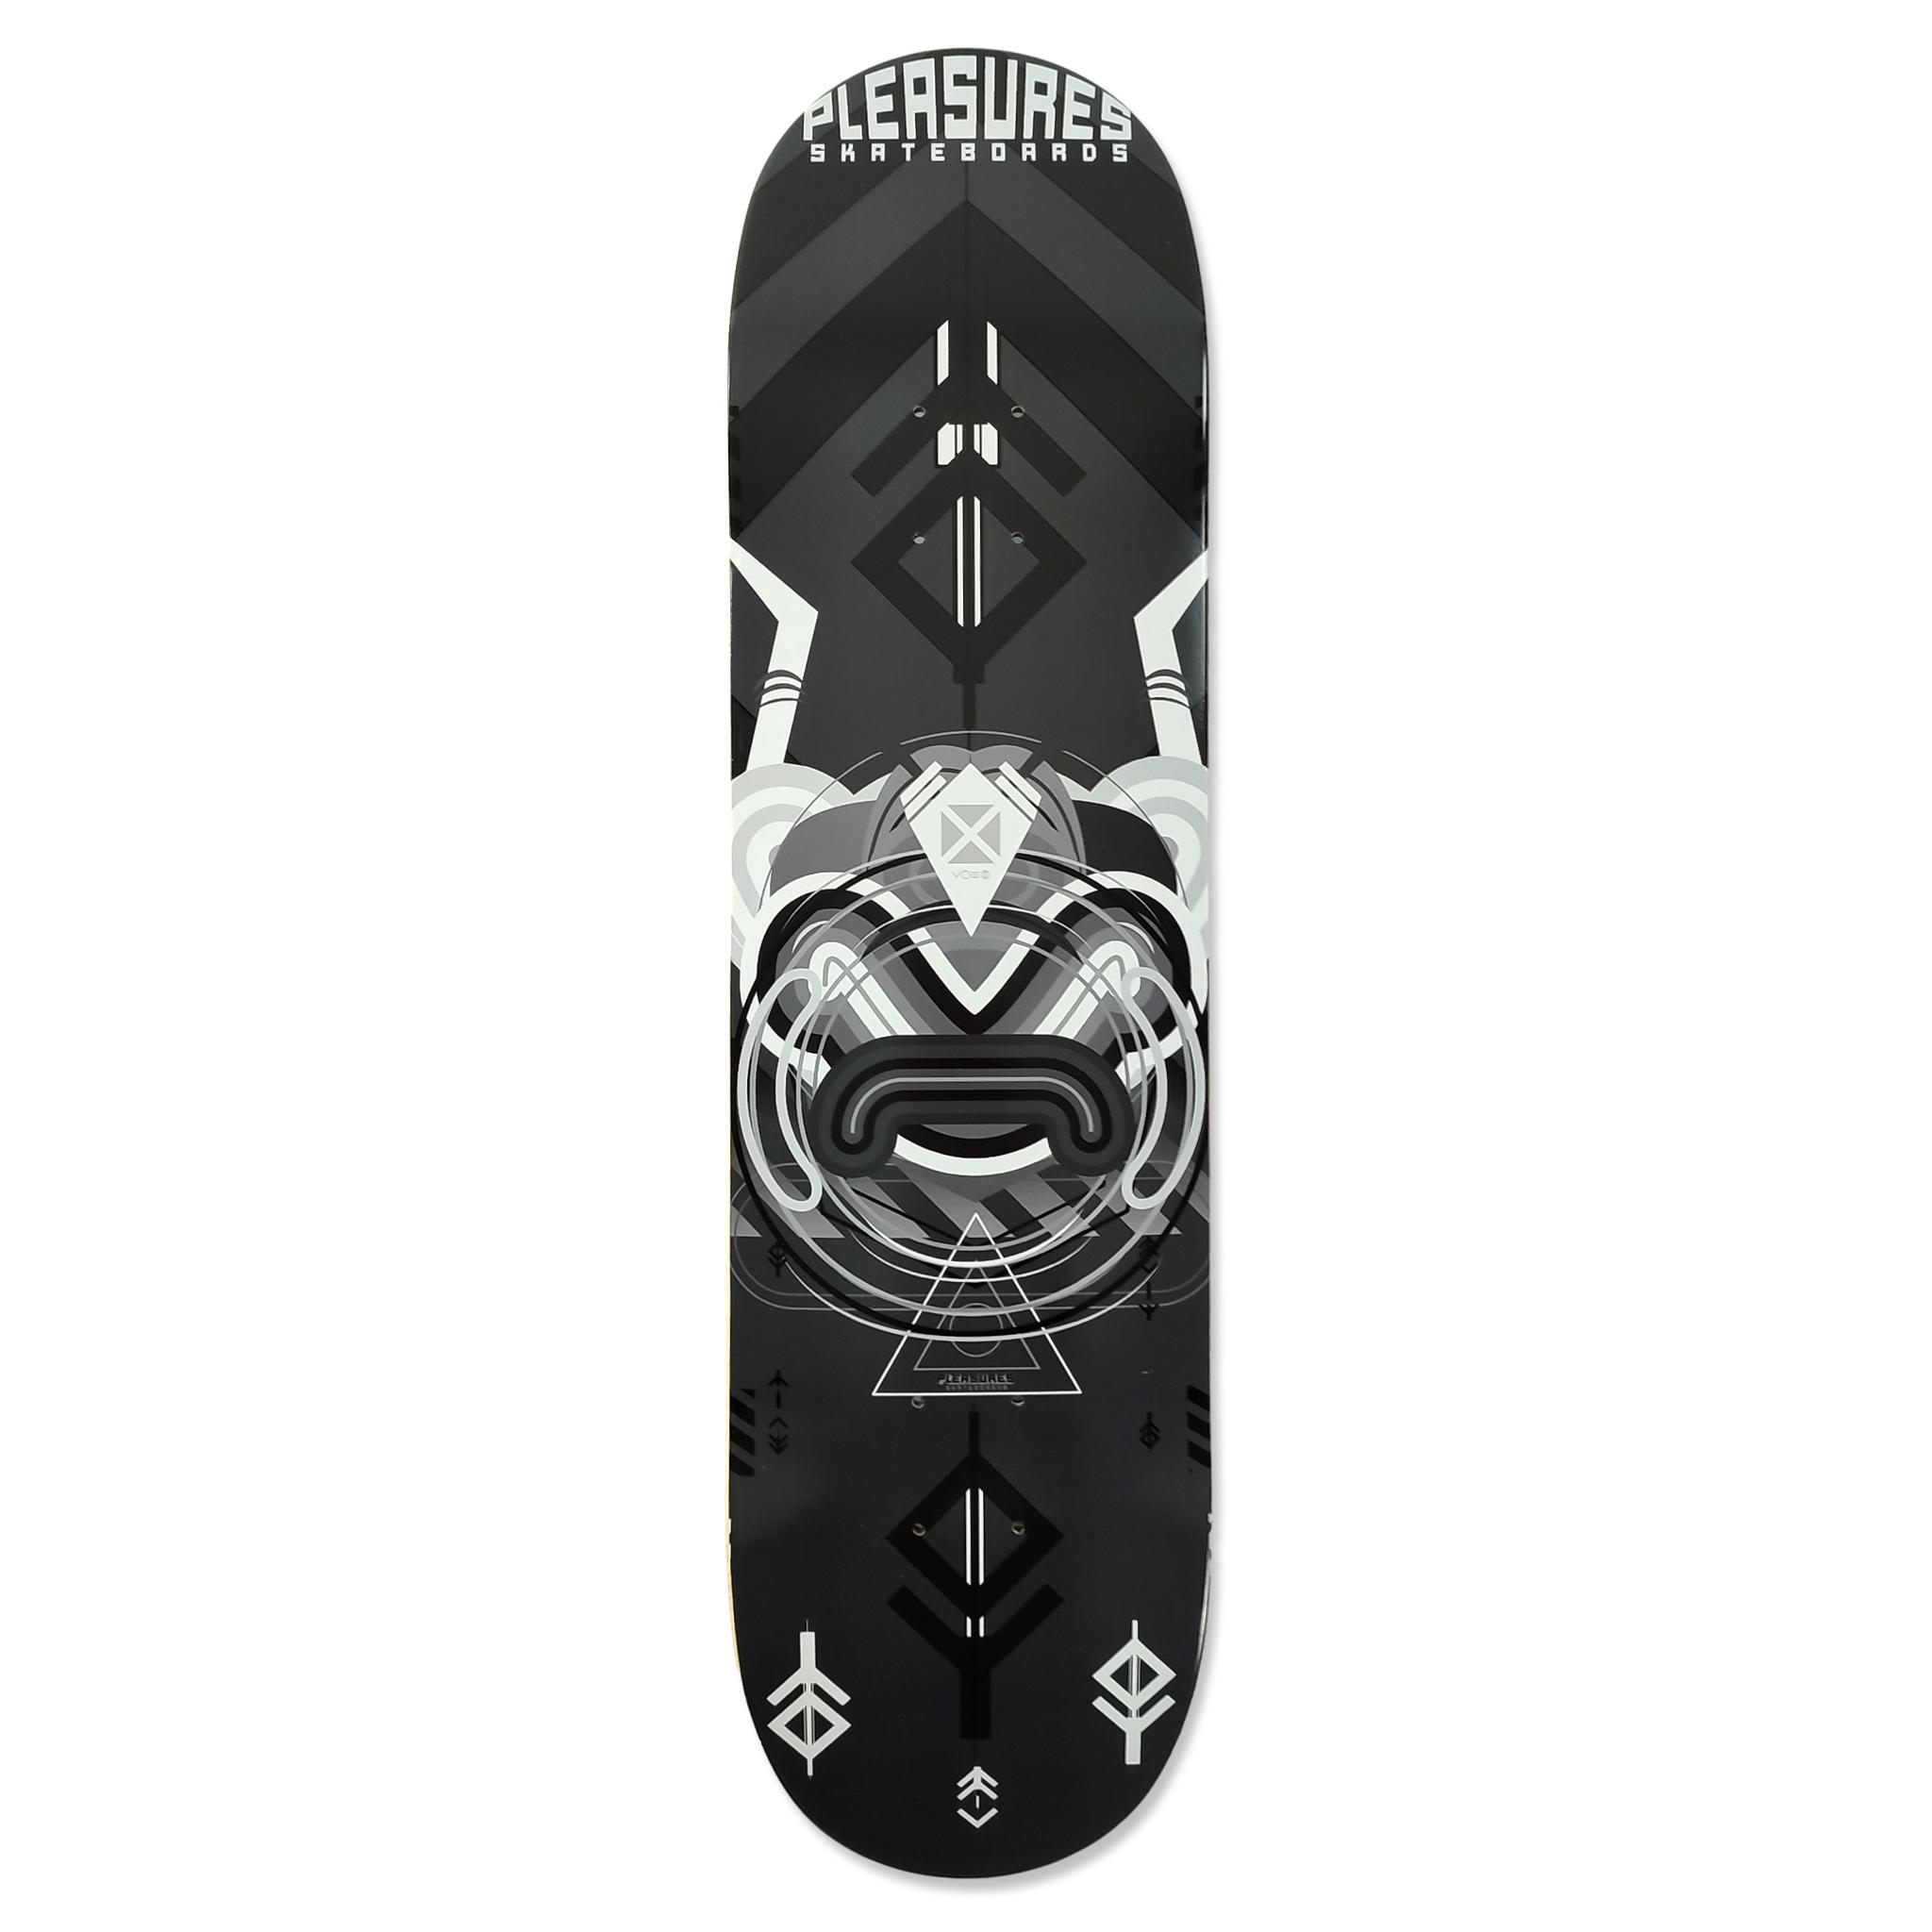 Pleasures Skateboards Mask Tavola 8.5